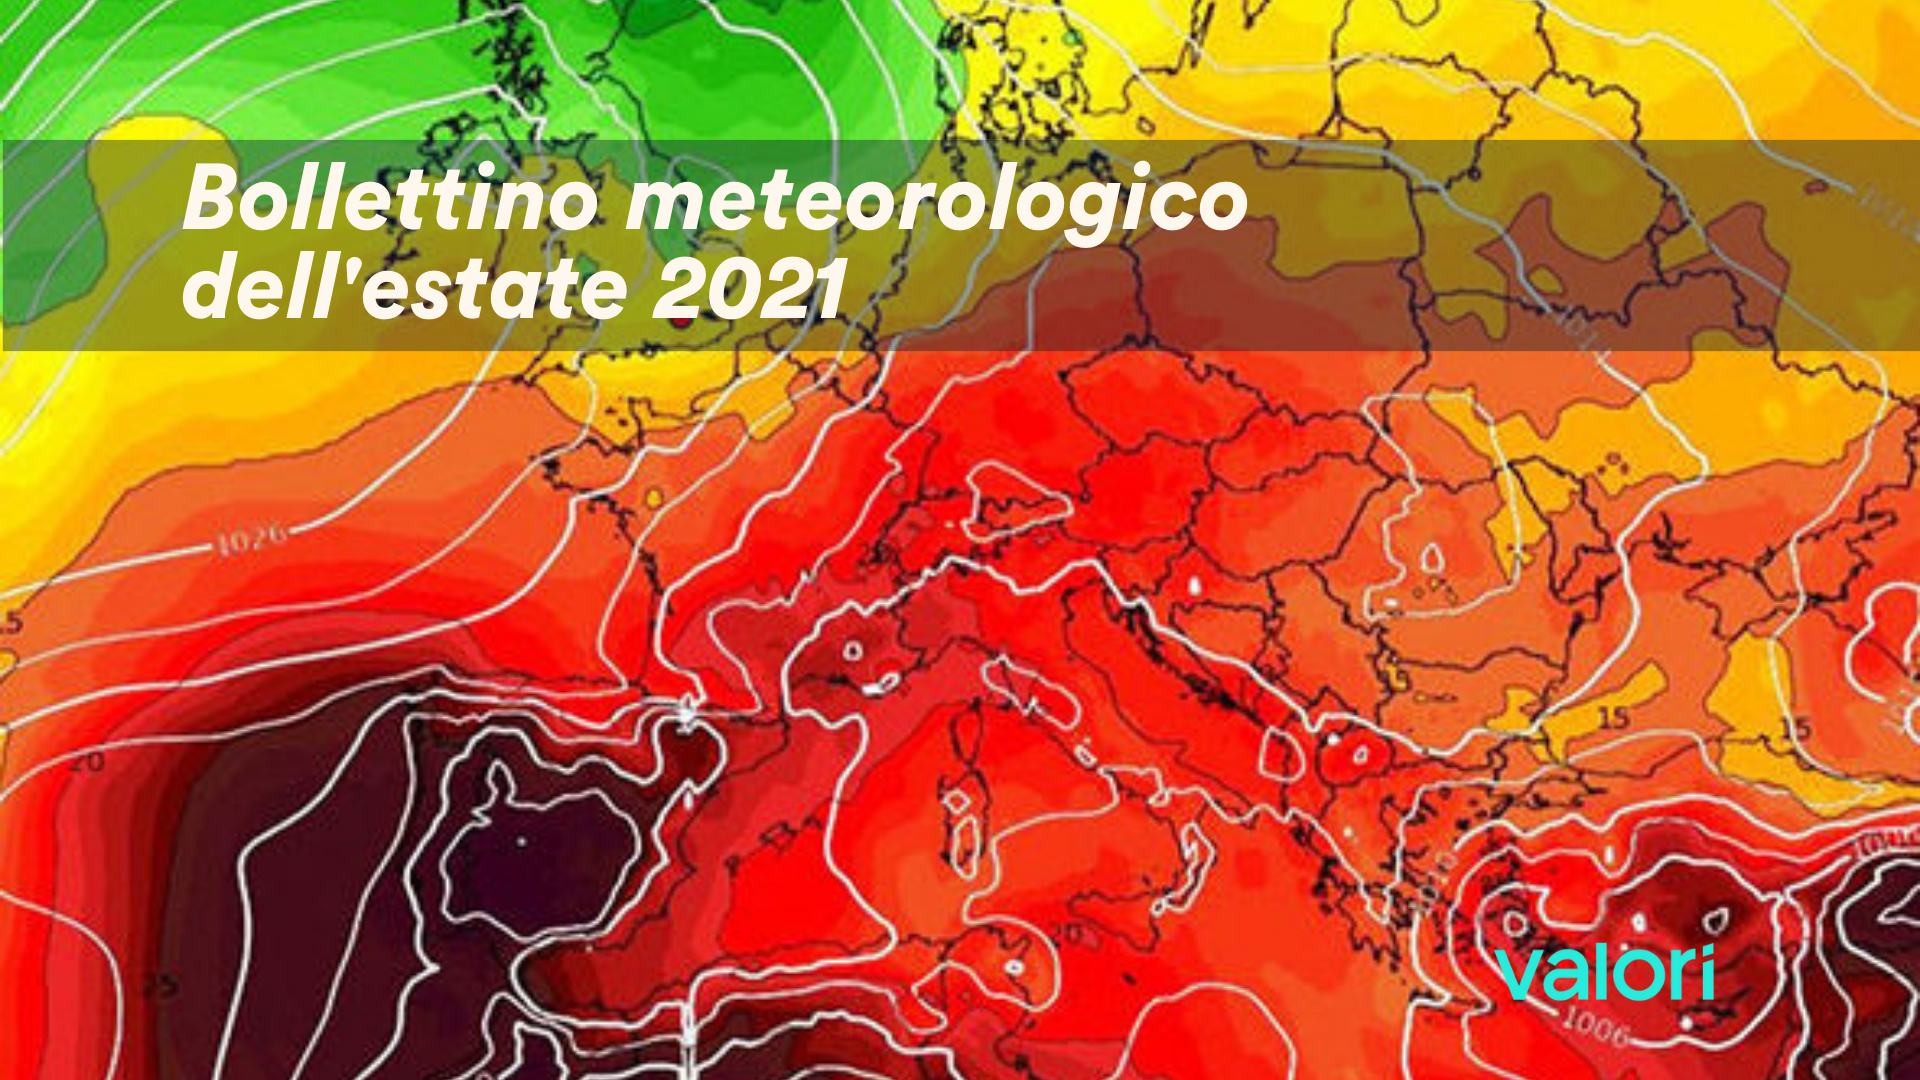 podcast bollettino meteorologico estate sito meteo previsioni